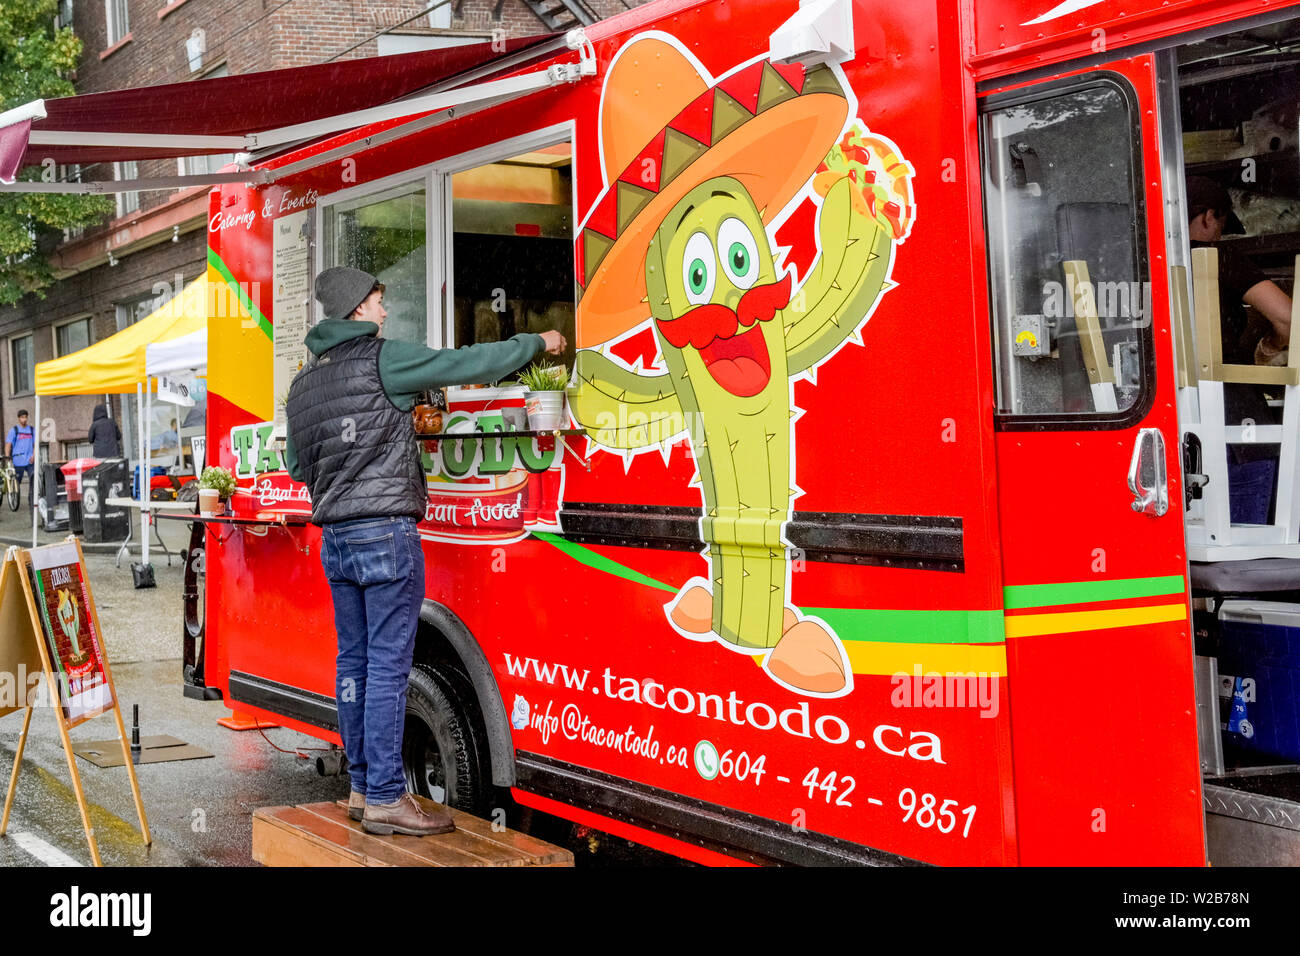 Mexican Taco Todo cibo carrello, la Giornata senza automobili, Unità commerciale, Vancouver, British Columbia, Canada Foto Stock